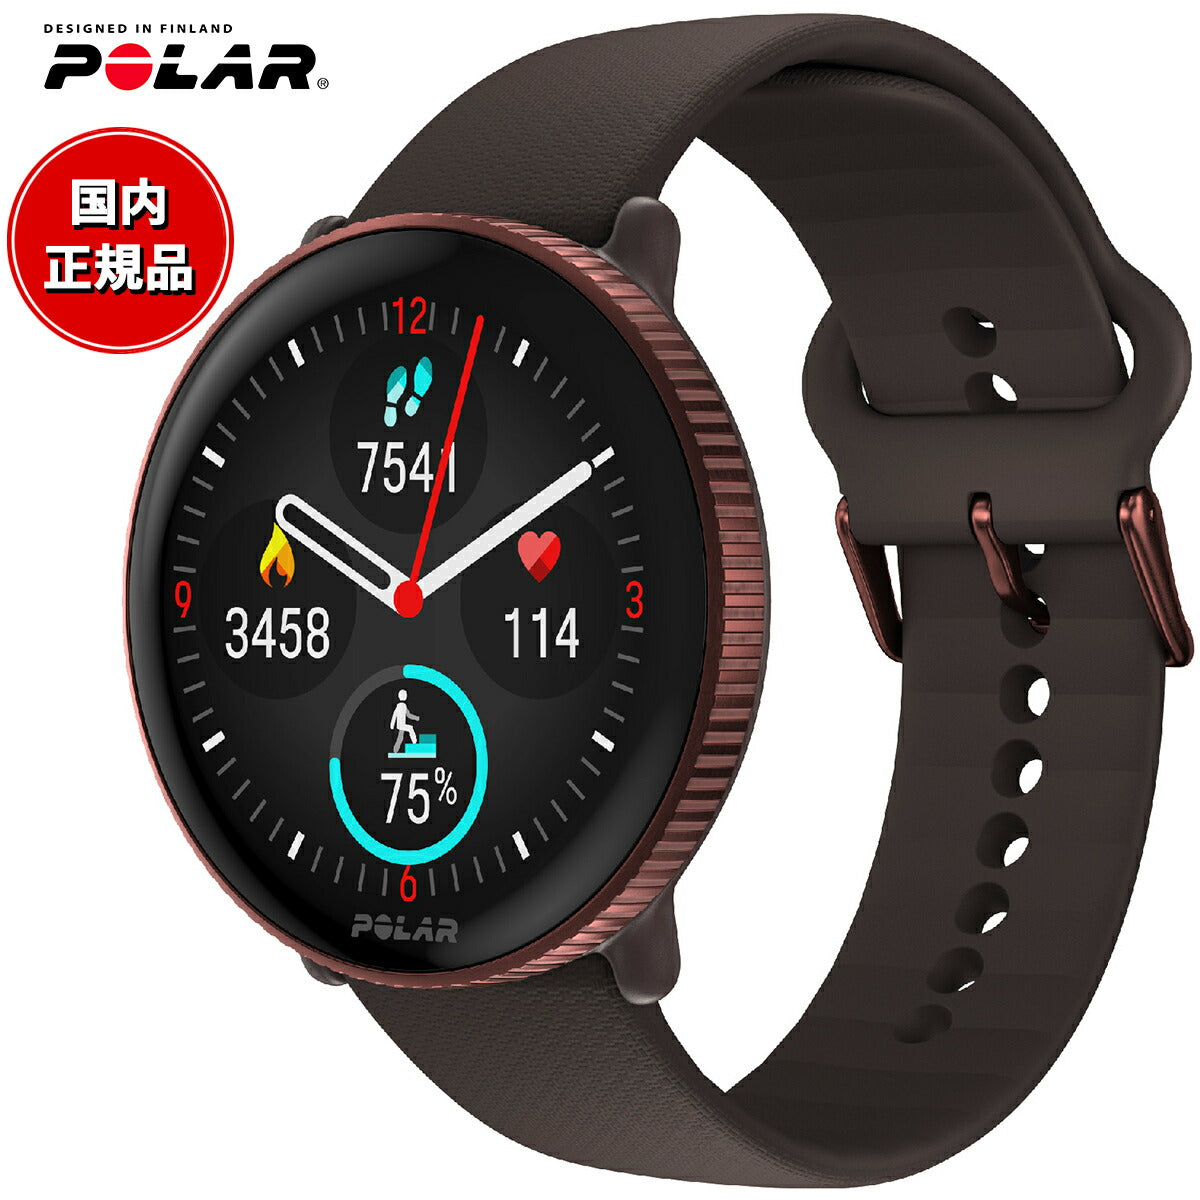 ポラール POLAR Ignite 3 スマートウォッチ GPS 心拍 スポーツ ヘルスケア ランニング マラソン 睡眠 腕時計 イグナイト 3 カッパー・ブラウン S-L 900106239 日本正規品